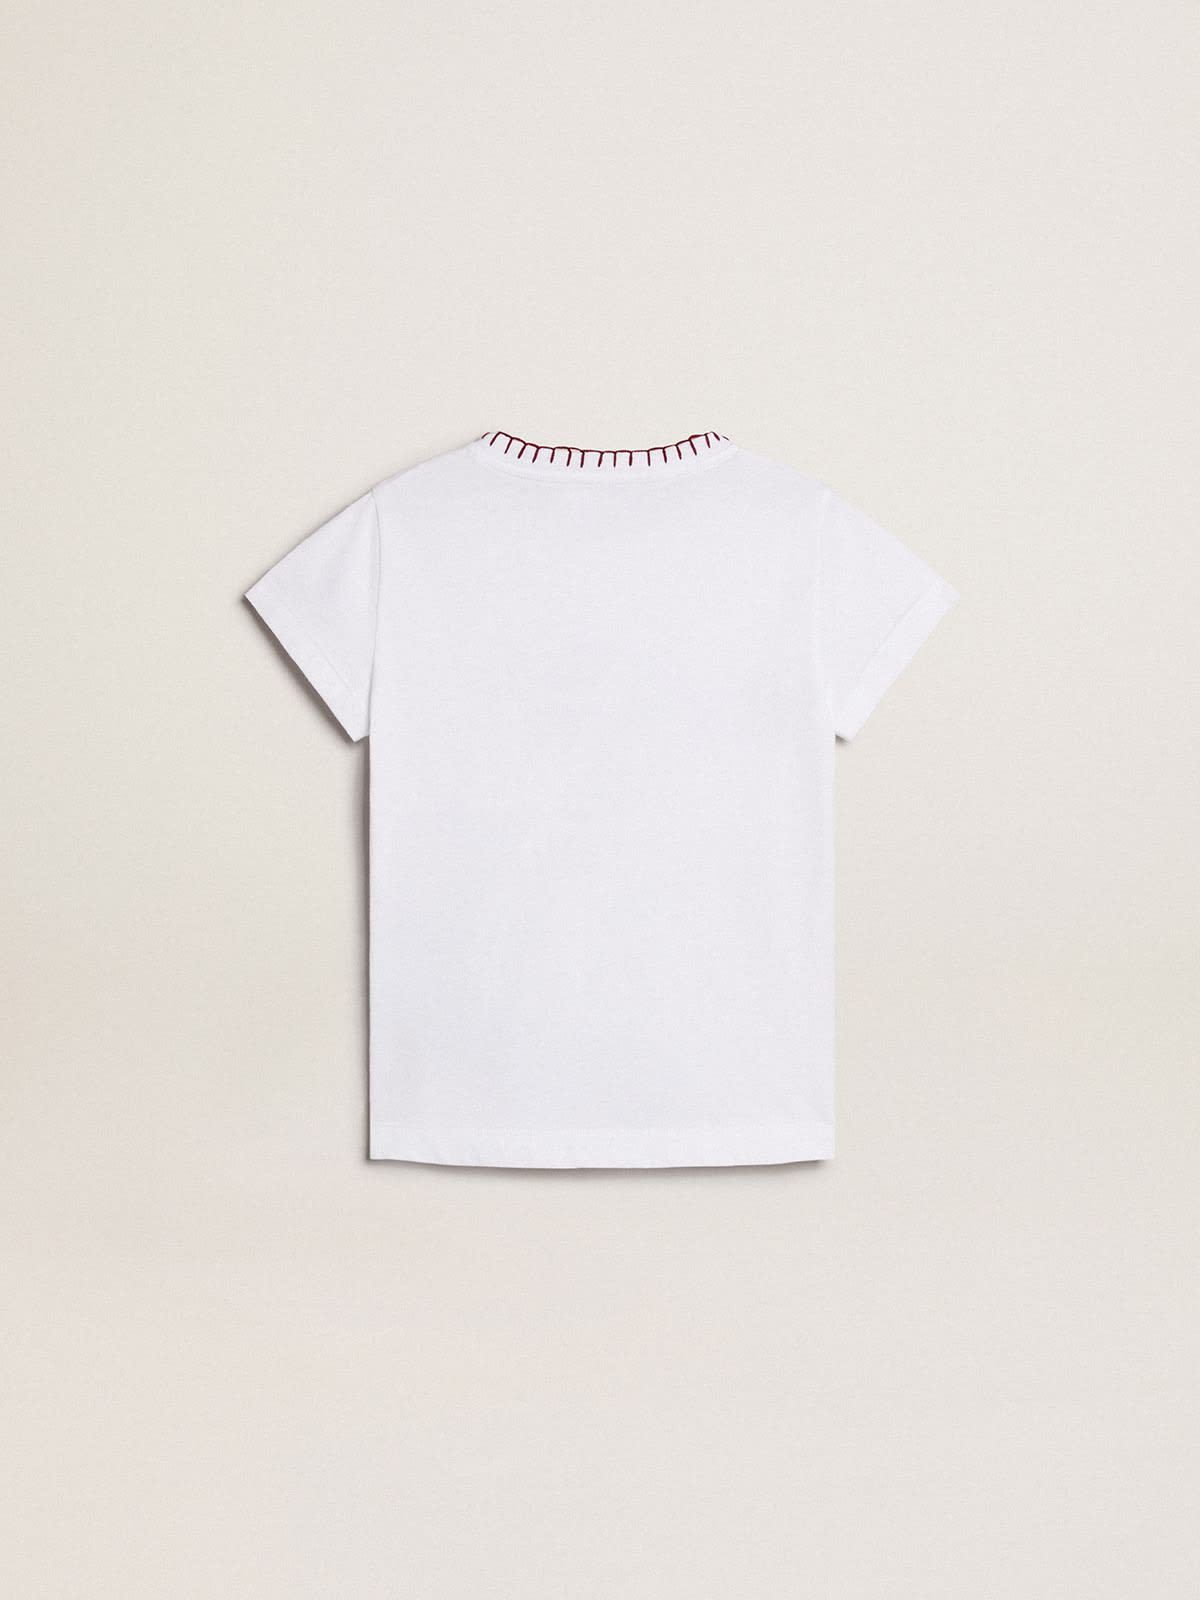 Golden Goose - T-shirt pour fille en coton blanc avec broderie réalisée à la main in 